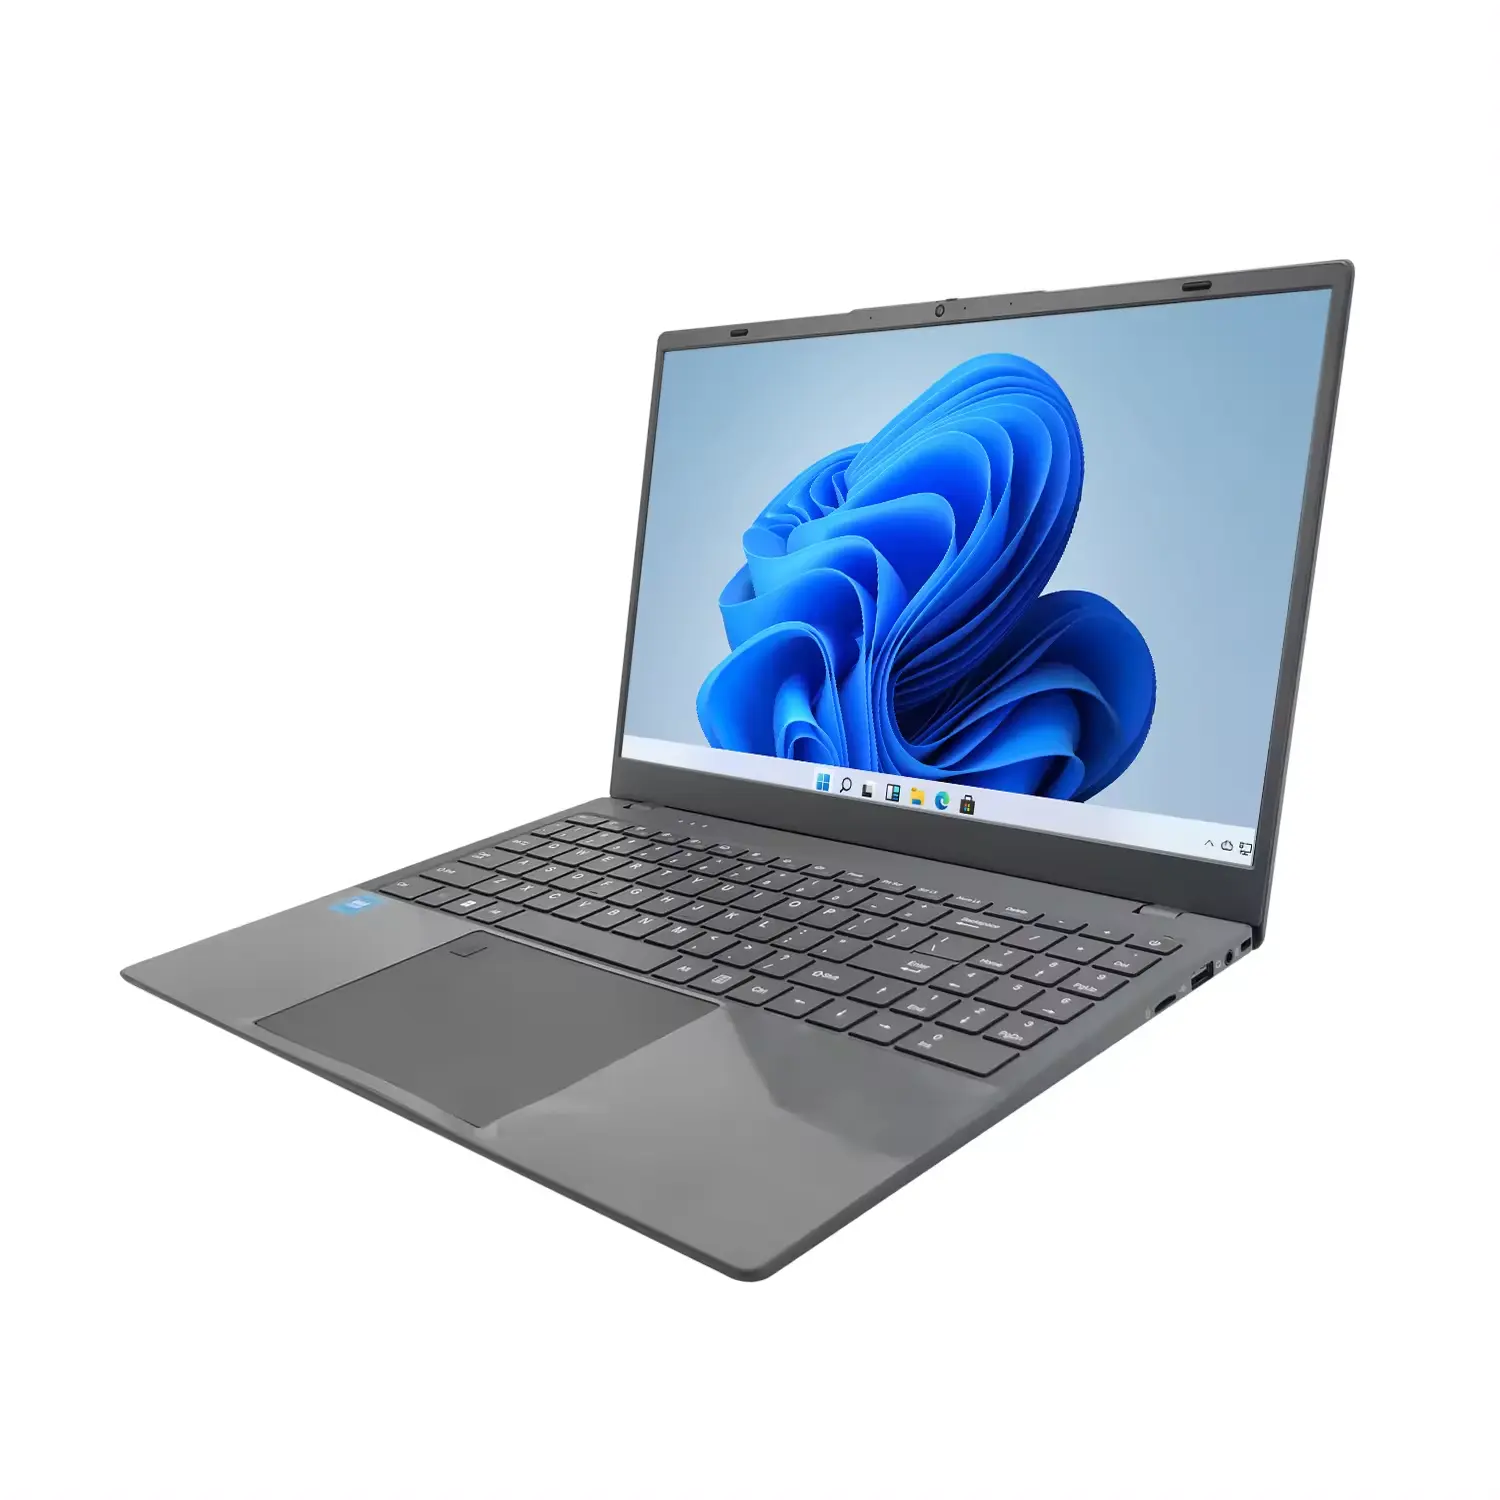 DIXIANG 도매 가장 저렴한 가격 브랜드 새로운 15.6 인치 i5-1035G4 DDR4 16GB notbook 컴퓨터 비즈니스 게임 I5 노트북